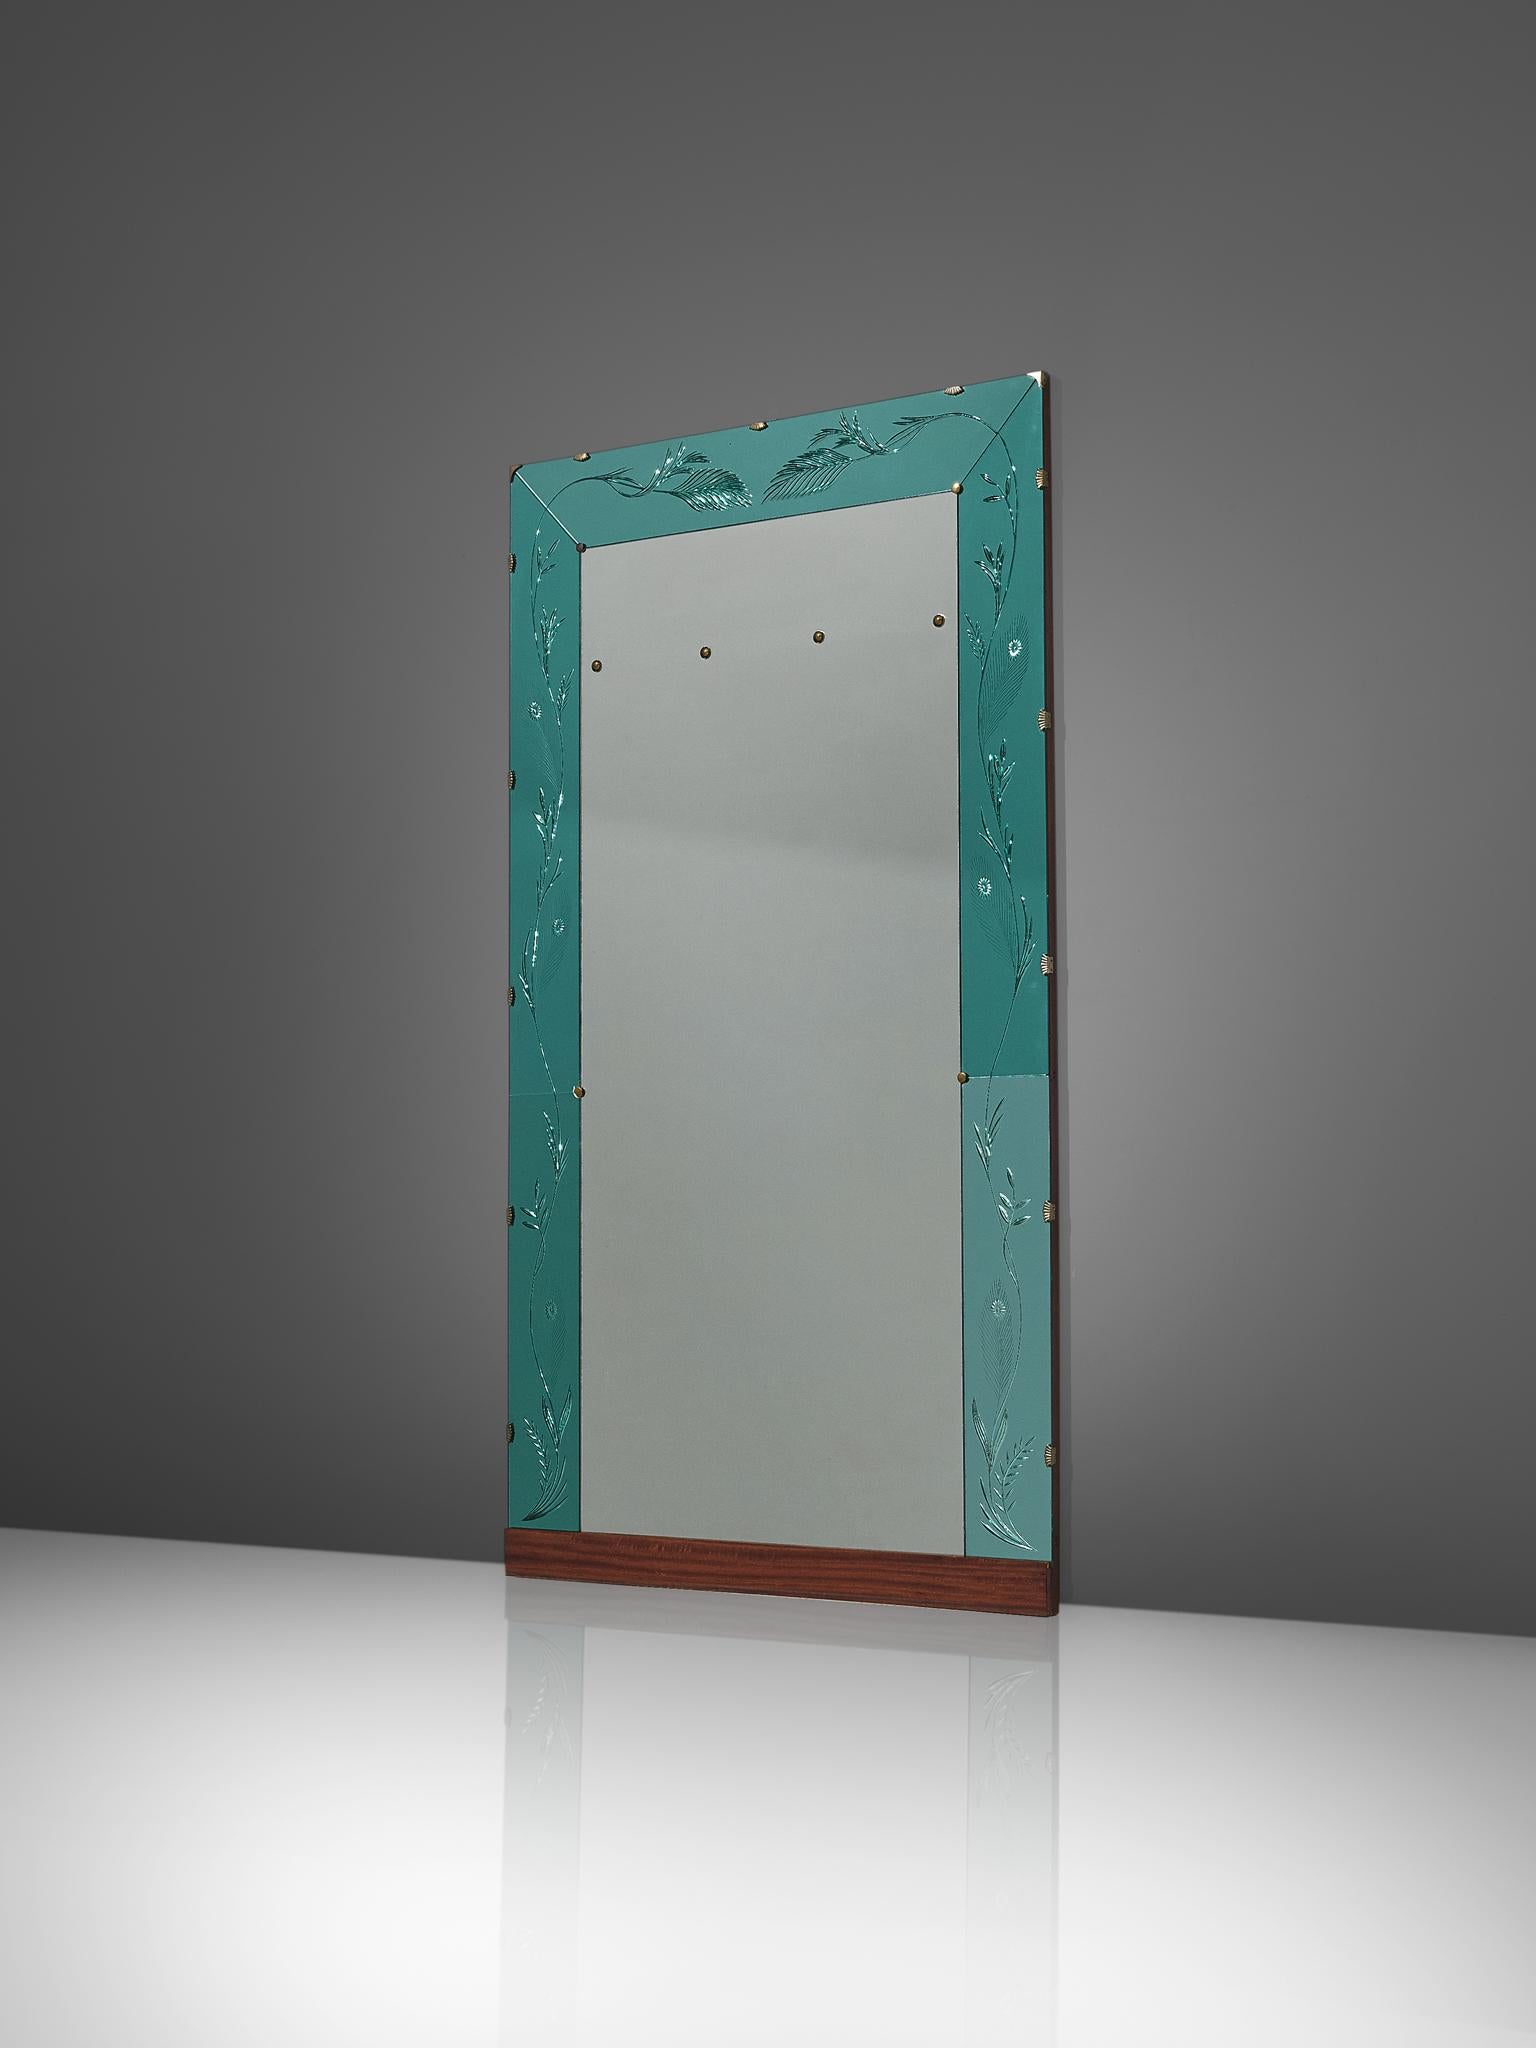 Miroir mural, verre, laiton, acajou, noyer, Italie, années 1950.

Un élégant miroir mural italien en deux tons. Le miroir est encadré par un cadre en verre turquoise, soutenu par des éléments en laiton. Le cadre en verre turquoise est gravé